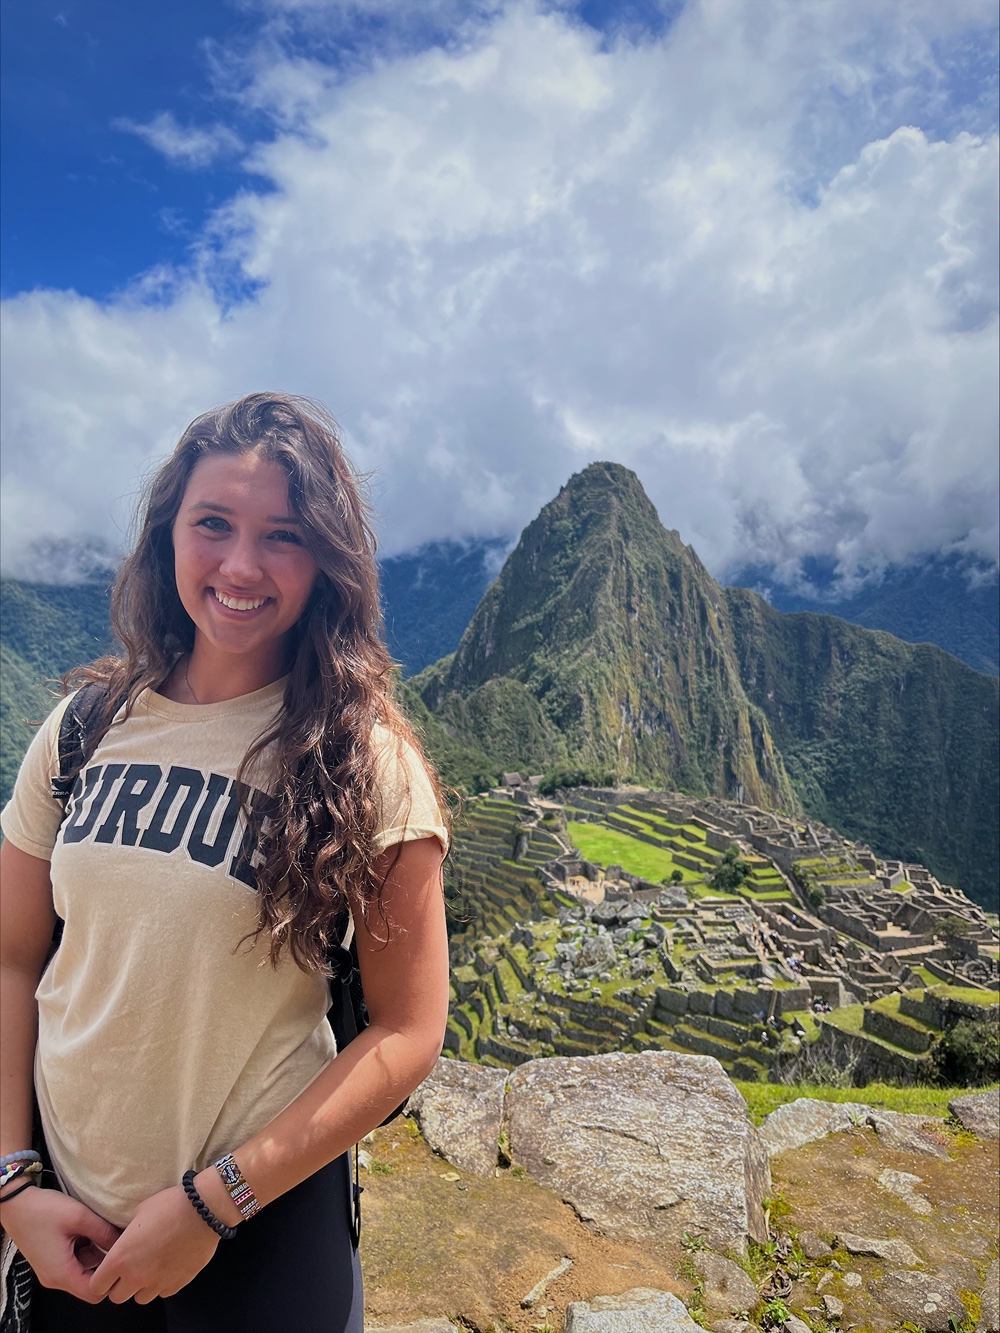 Melanie Hasler in Peru on a study abroad trip